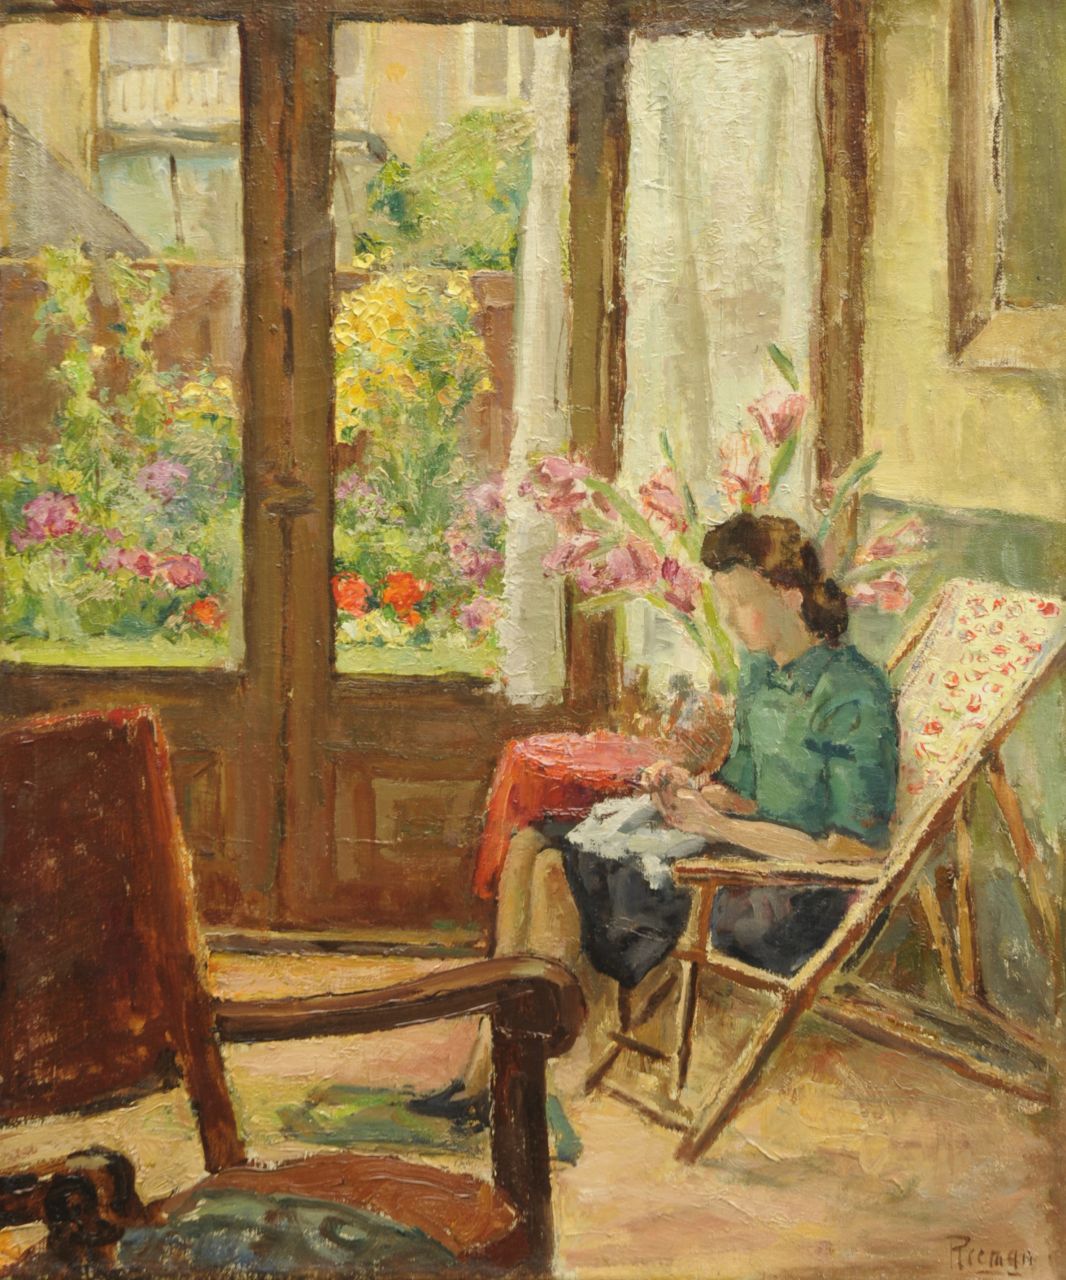 Reeman S.  | Simon Reeman, Vrouw in interieur, olieverf op doek 60,0 x 50,6 cm, gesigneerd rechtsonder